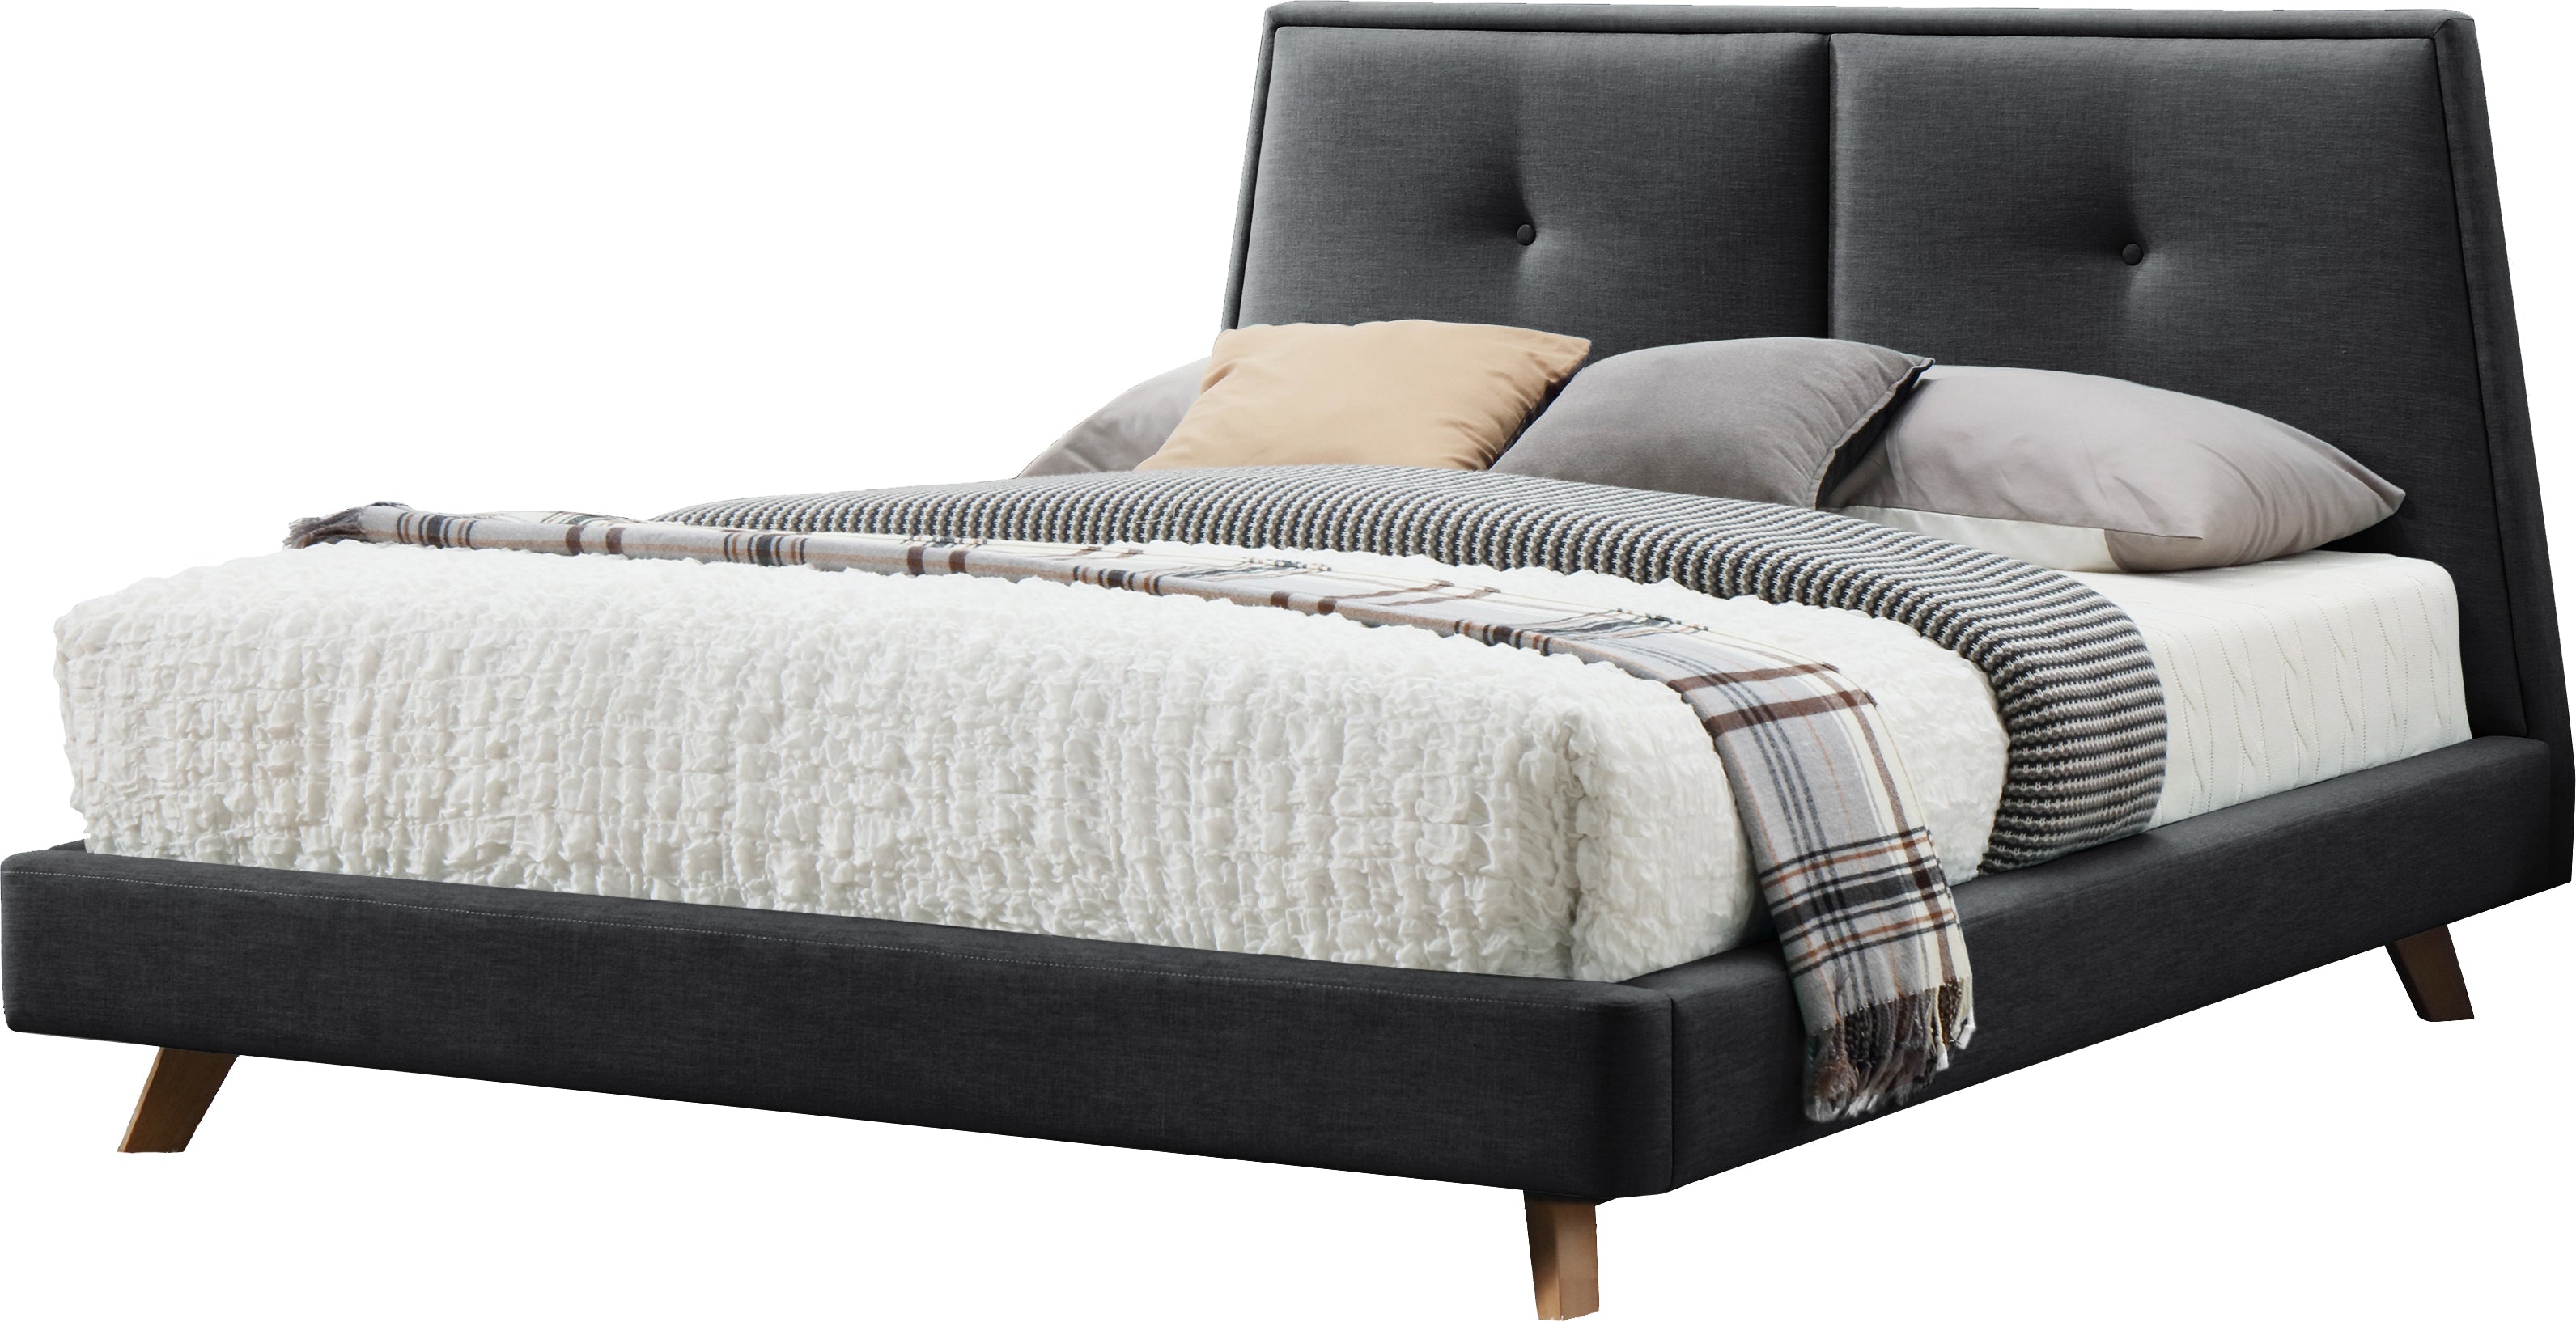 Kenzie Upholstered Platform Bed - Dark Grey